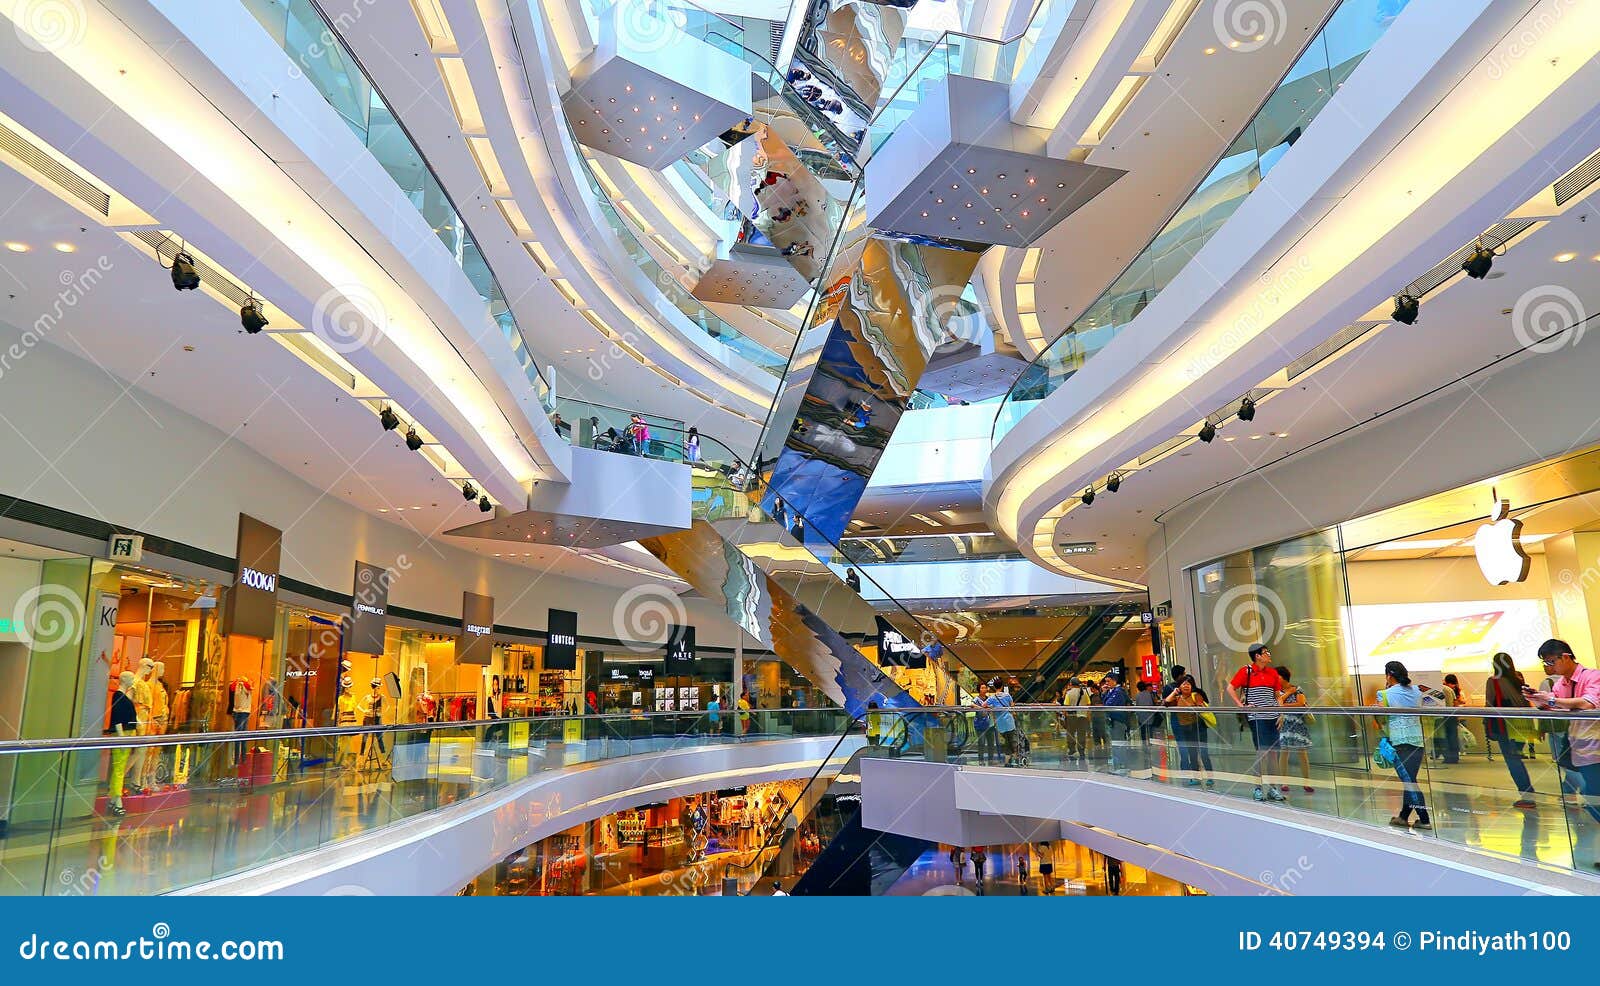 Festival Walk Shopping Mall, Hong Kong Editorial Stock Image - Image of ...